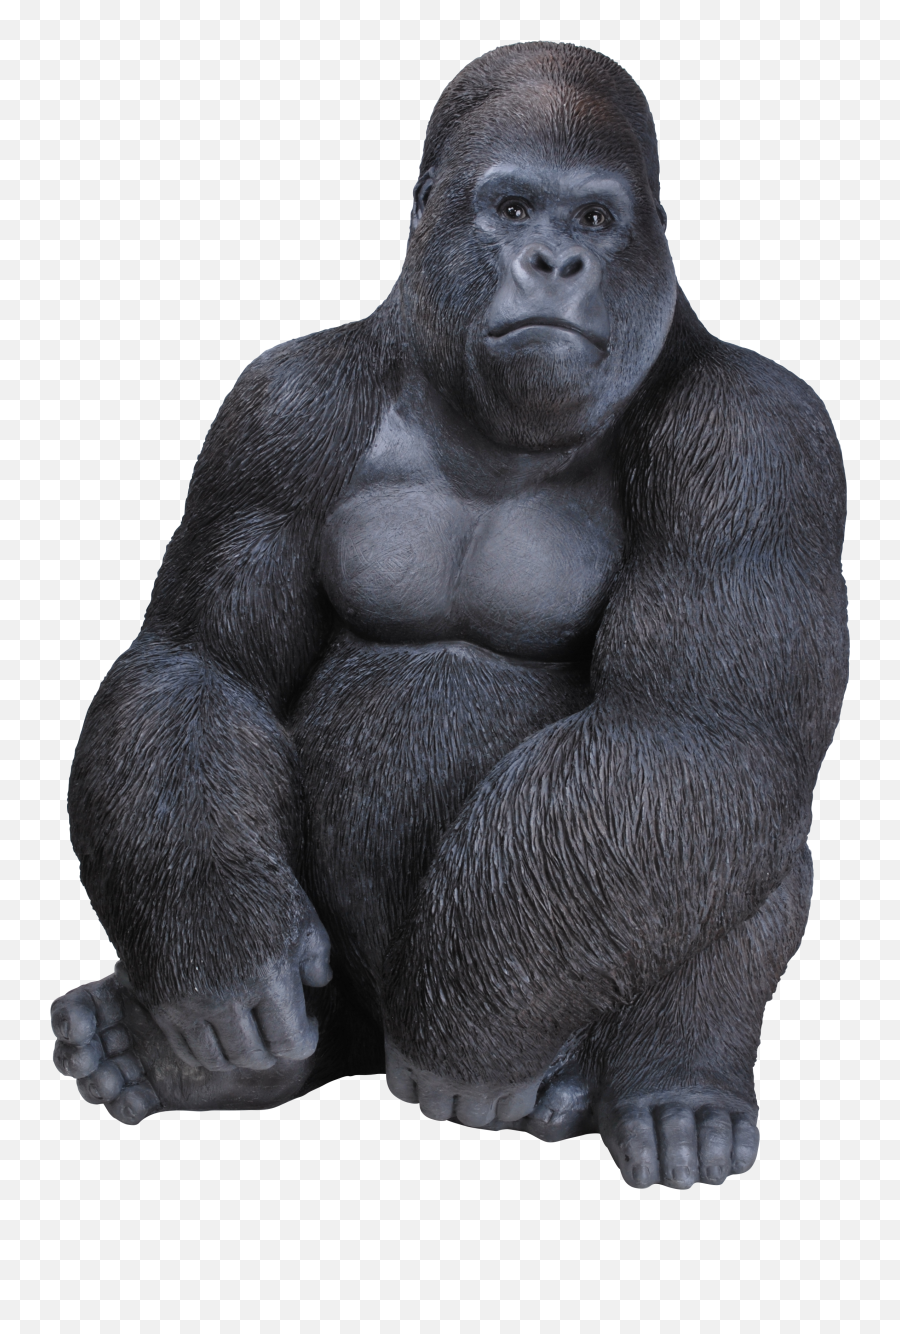 Vivid Art Gorilla Png Image - Gorilla Sitting Png,Gorilla Png